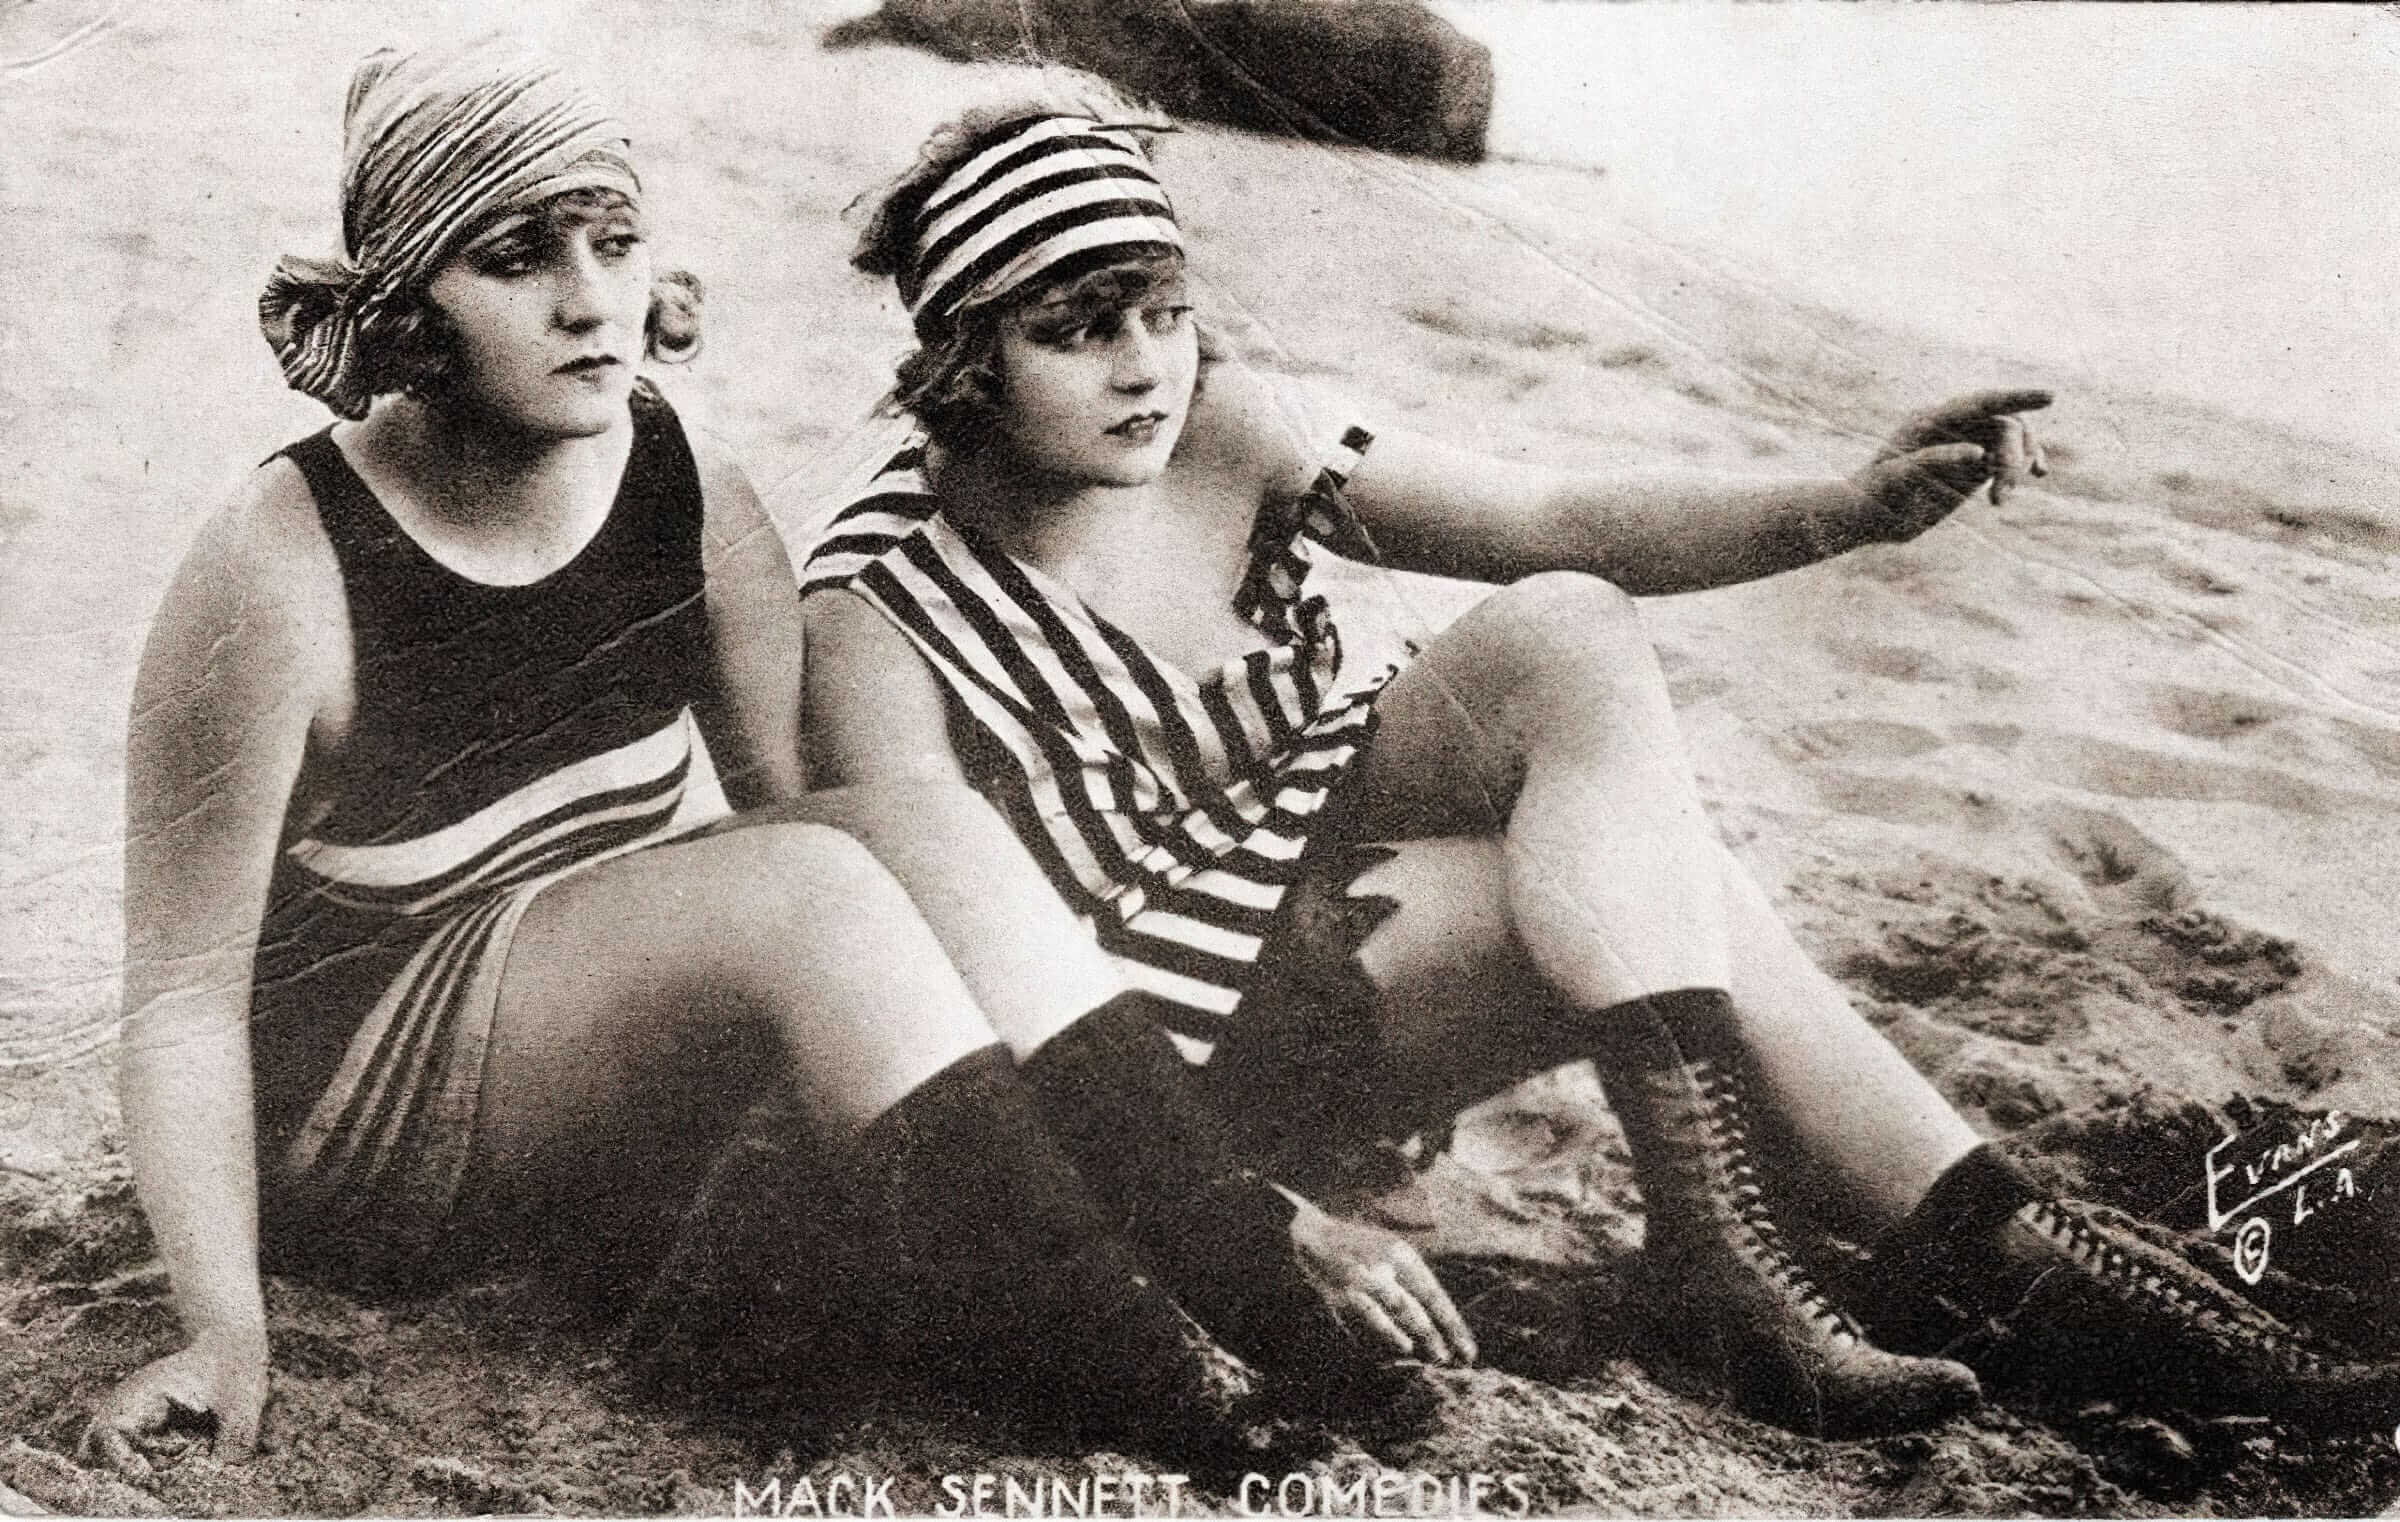 Клэр Андерсон и Роуз Картер в проекте режиссера и продюсера Мака Сеннетта Bathing Beauties (1918). Источник: Нью-Йоркская публичная библиотека